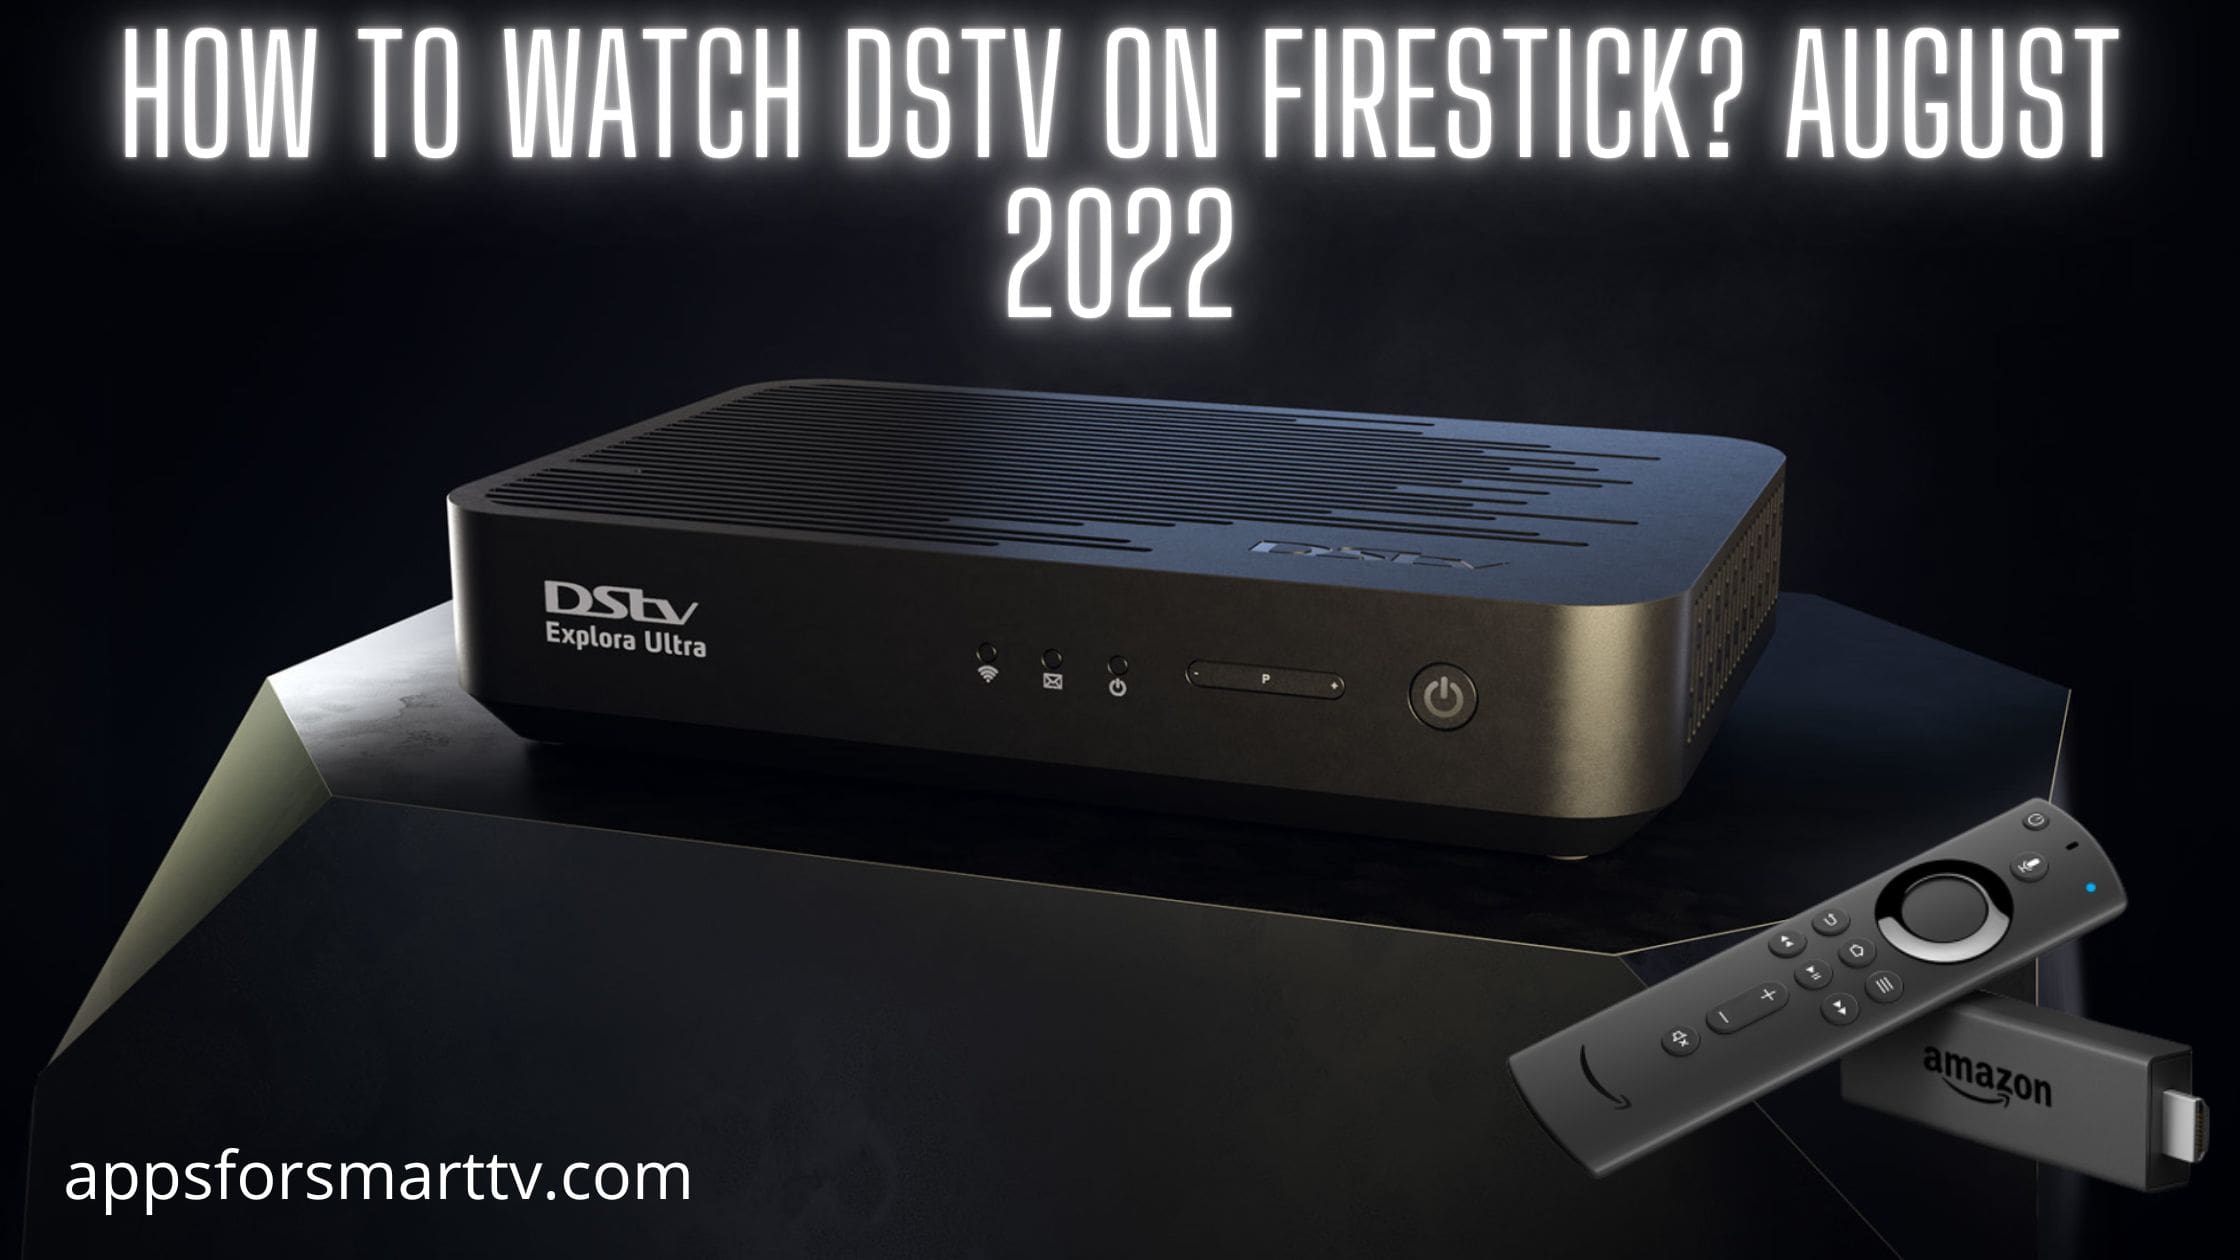 DStv on Firestick